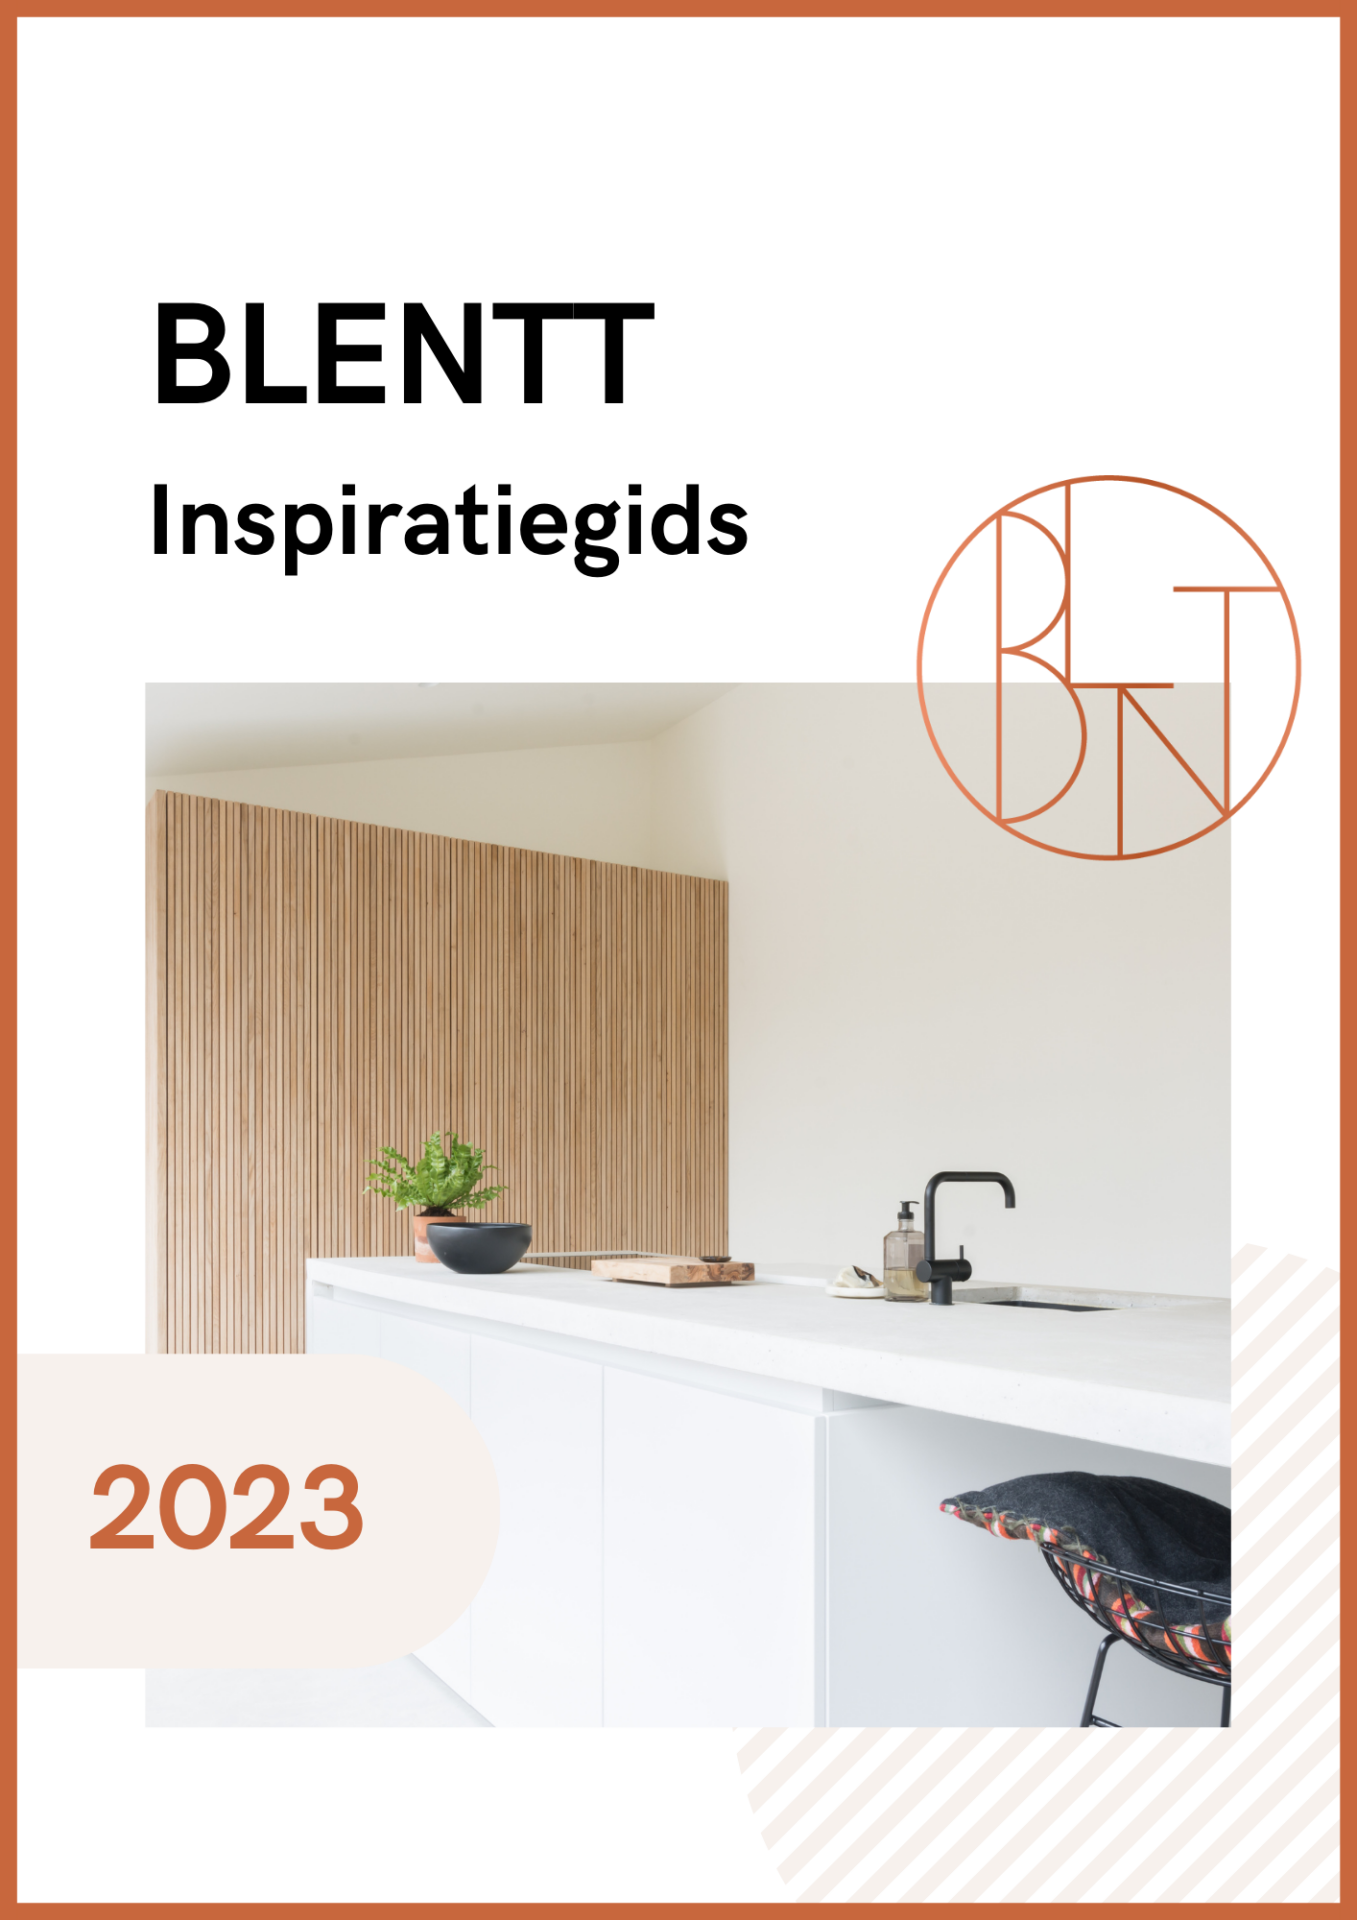 BLENTT Inspiratiegids 2023 3